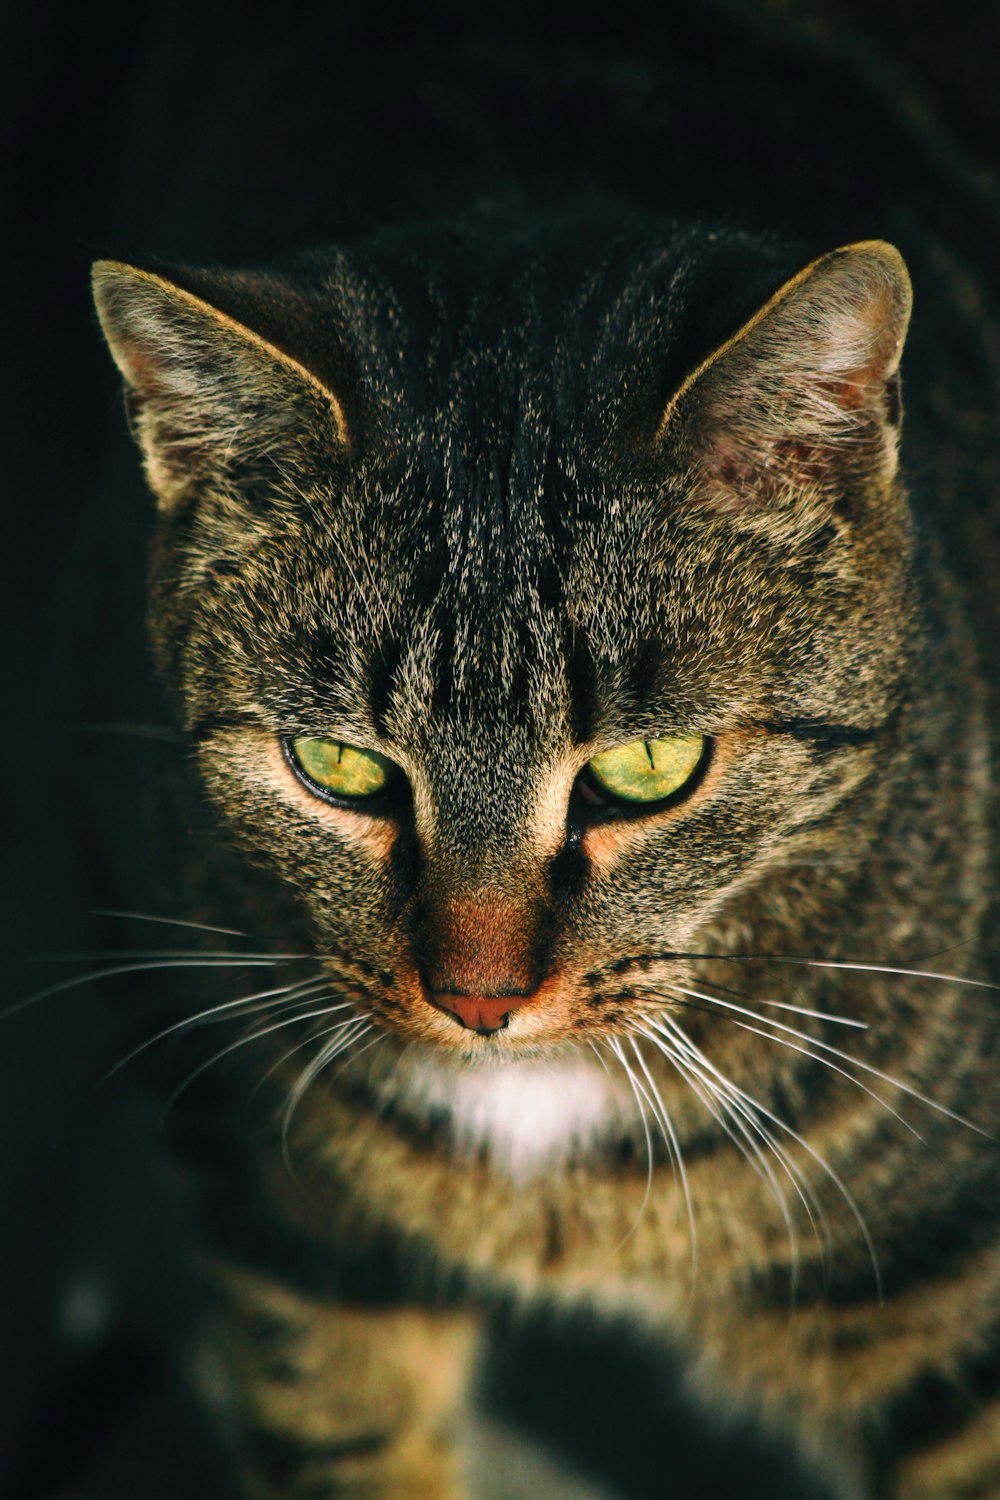 fotografia em close-up do gato tabby cinza